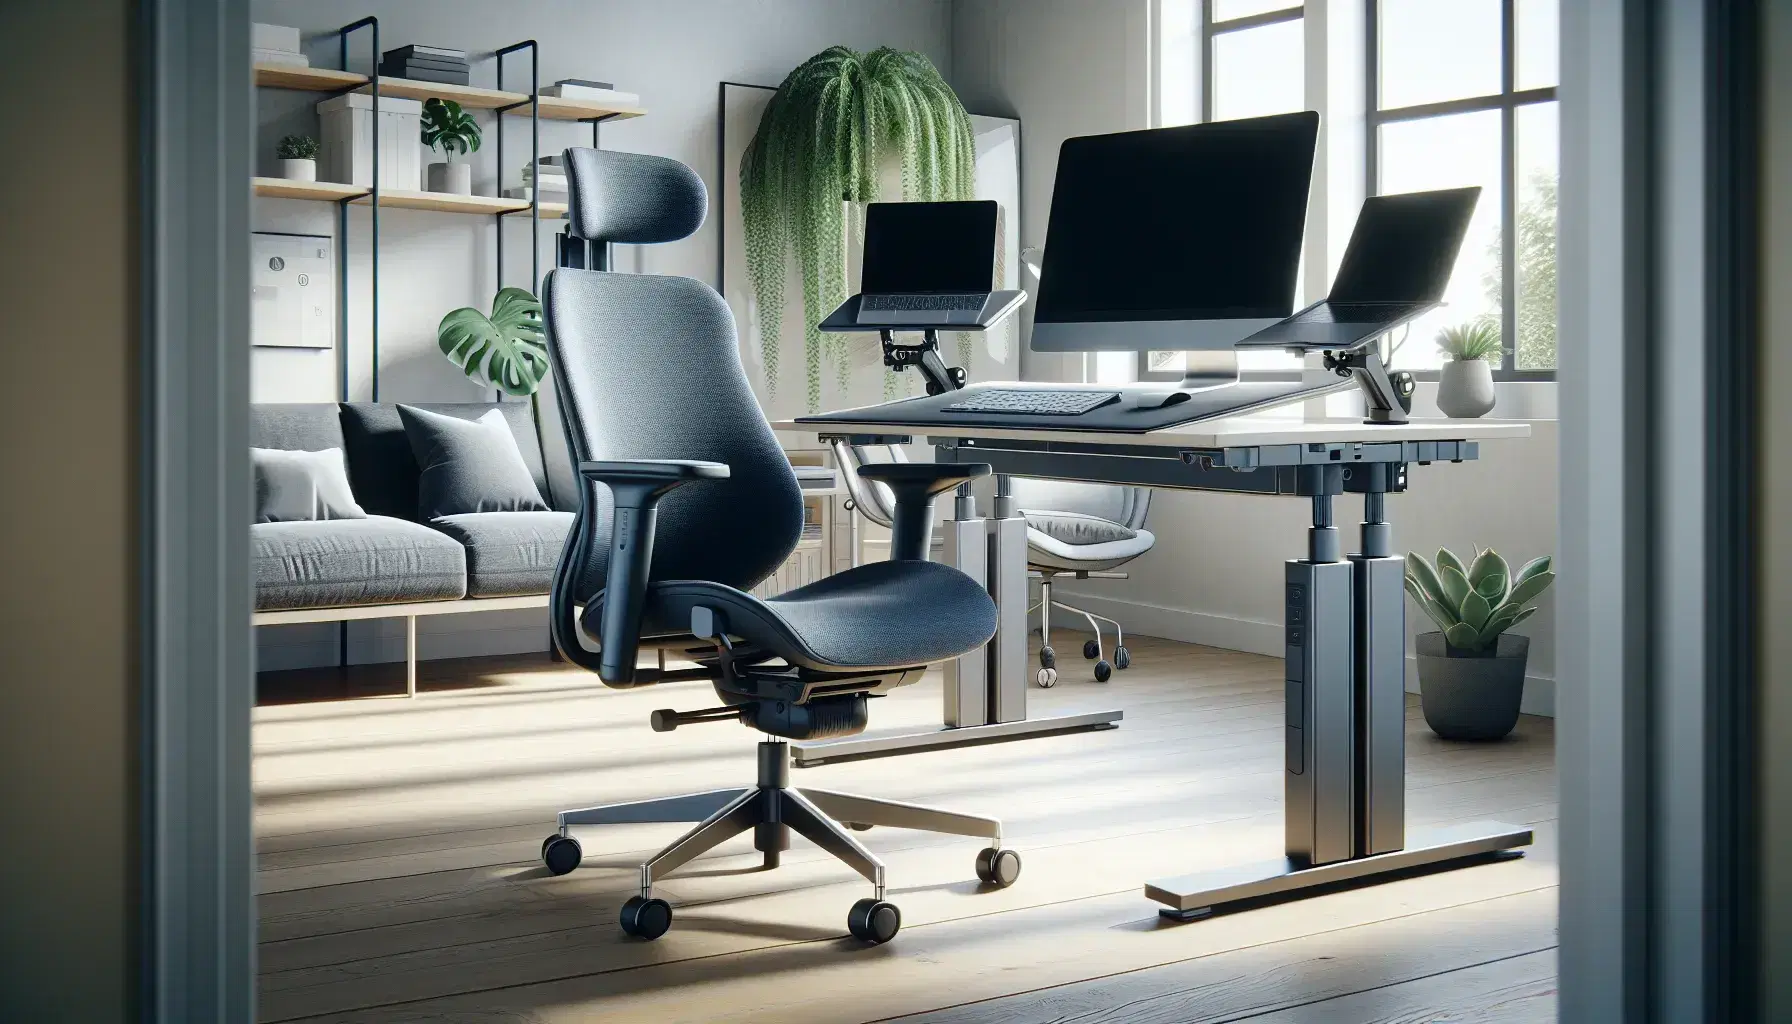 Oficina moderna y luminosa con silla ergonómica azul oscuro, escritorio ajustable, monitor en soporte, teclado ergonómico y planta verde, iluminada por luz natural.